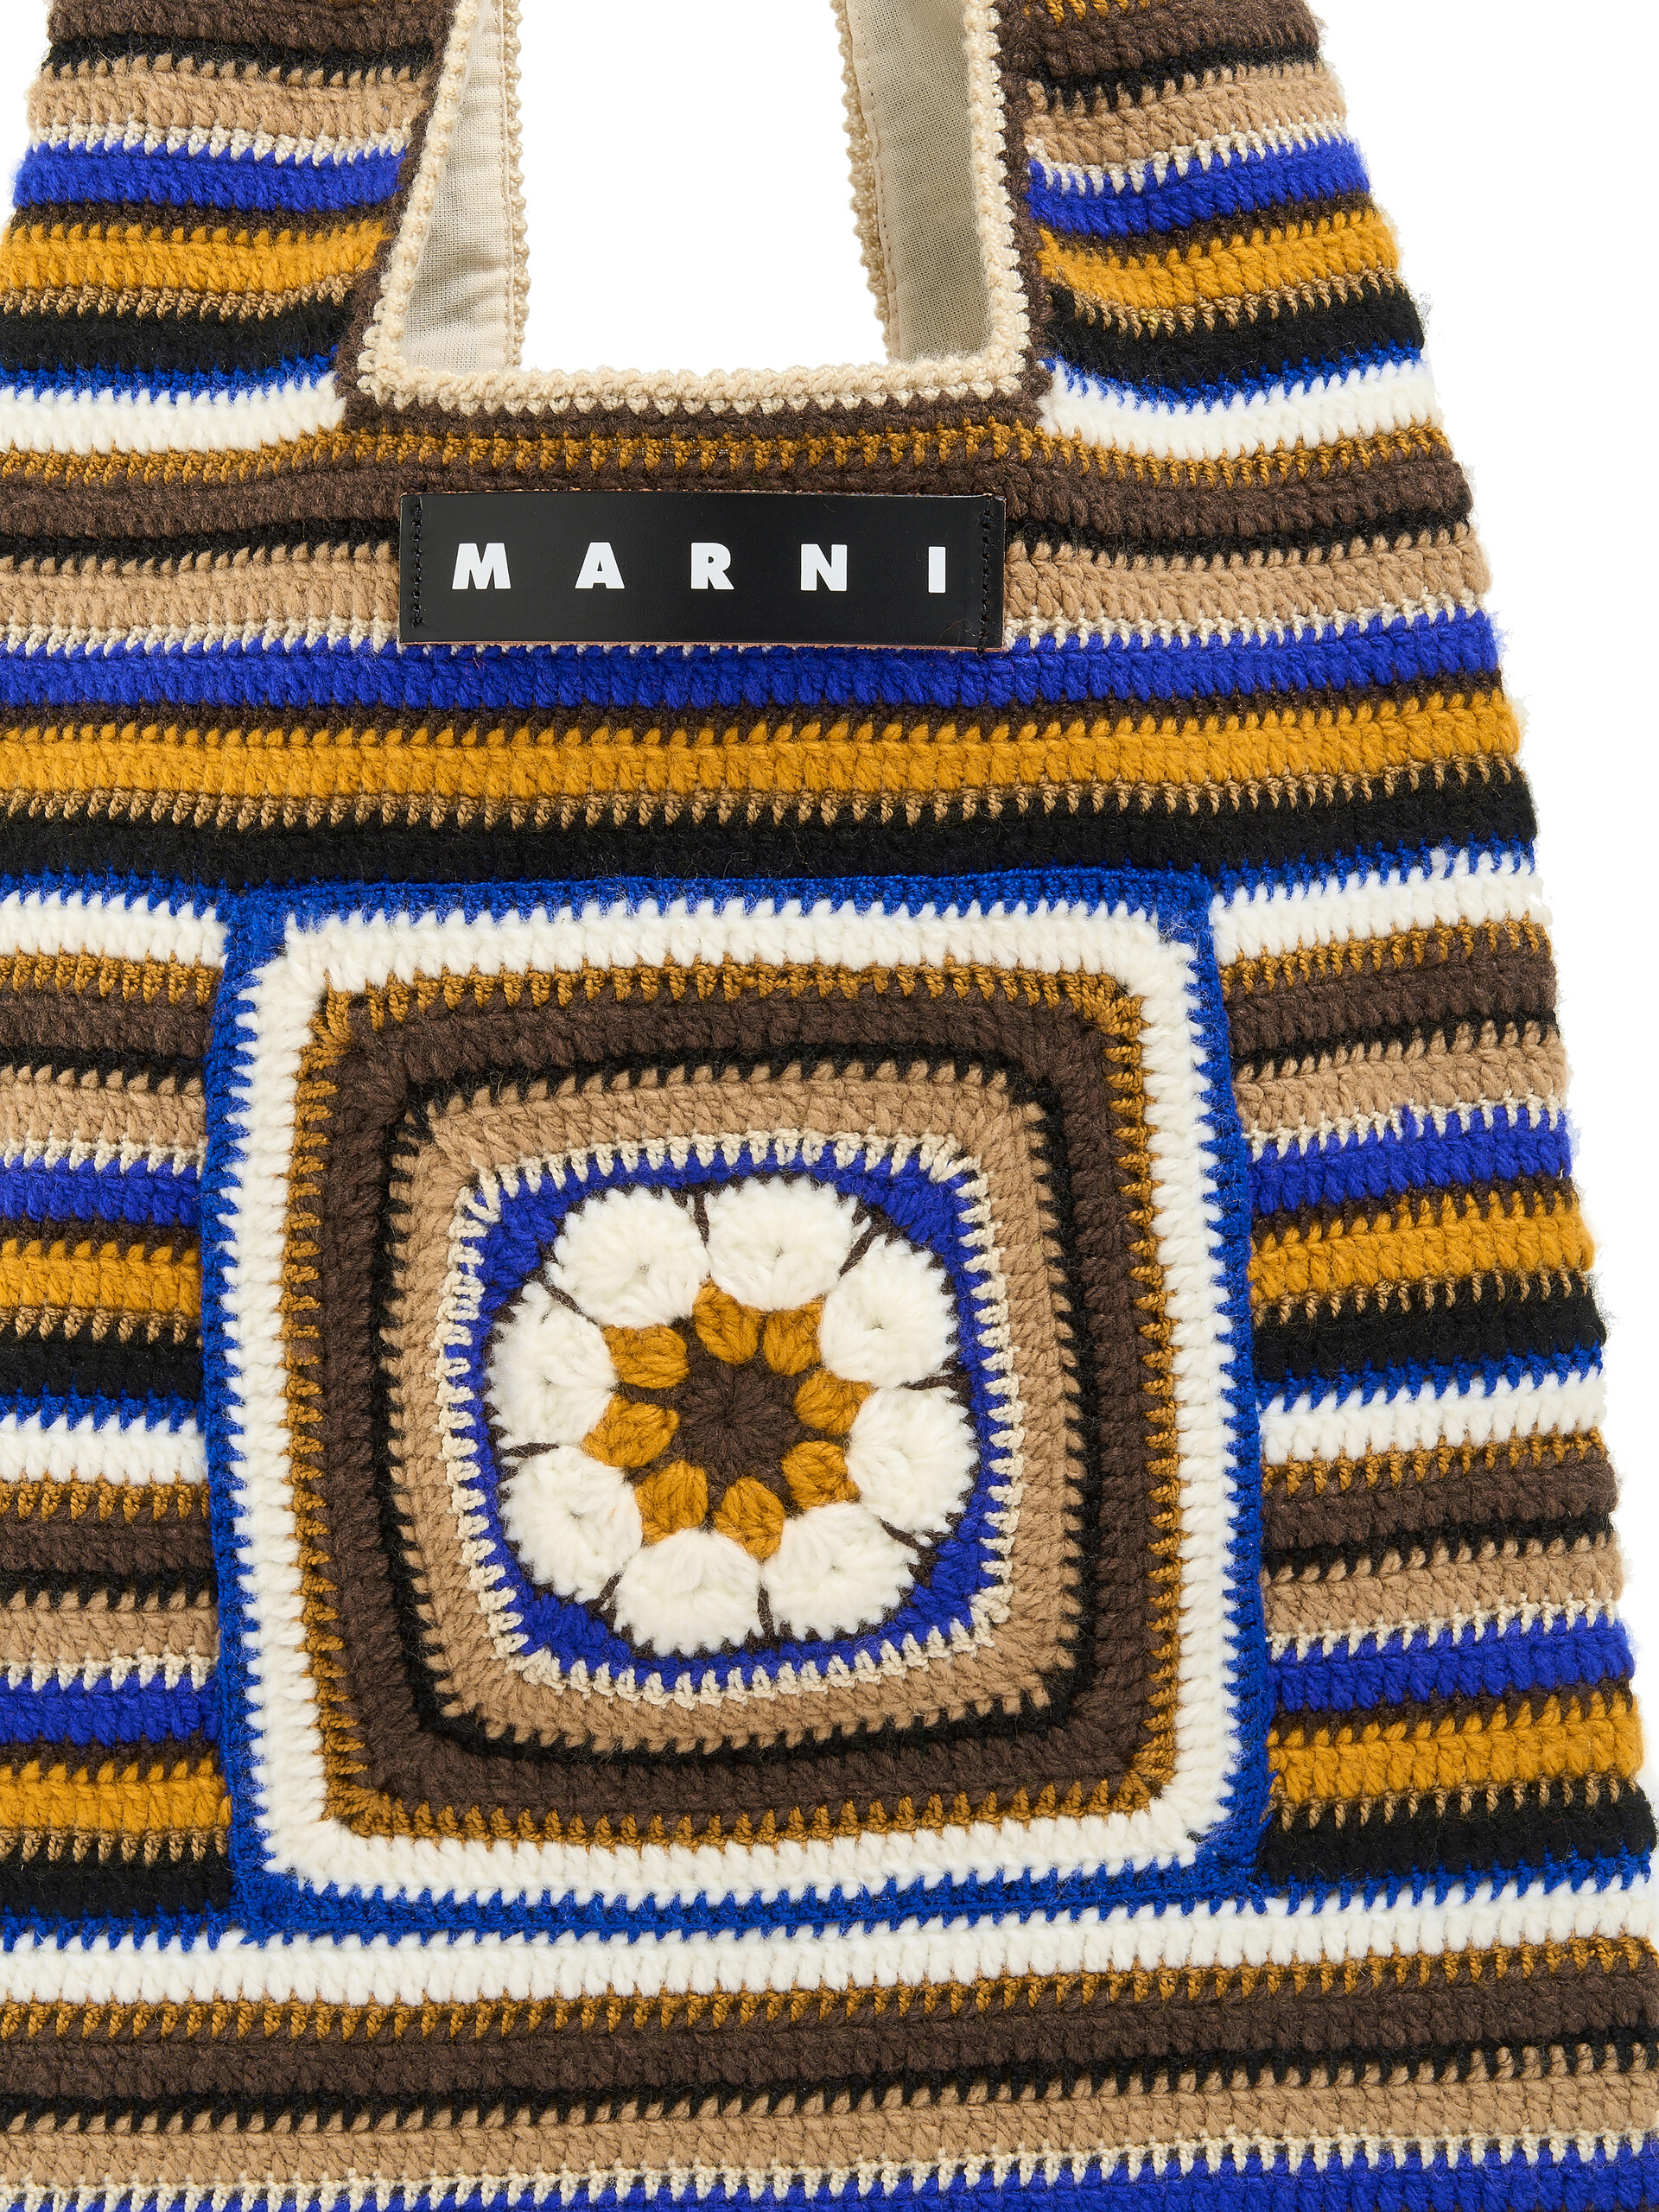 Sac Marni Market Mom bleu réalisé au crochet - Sacs cabas - Image 4